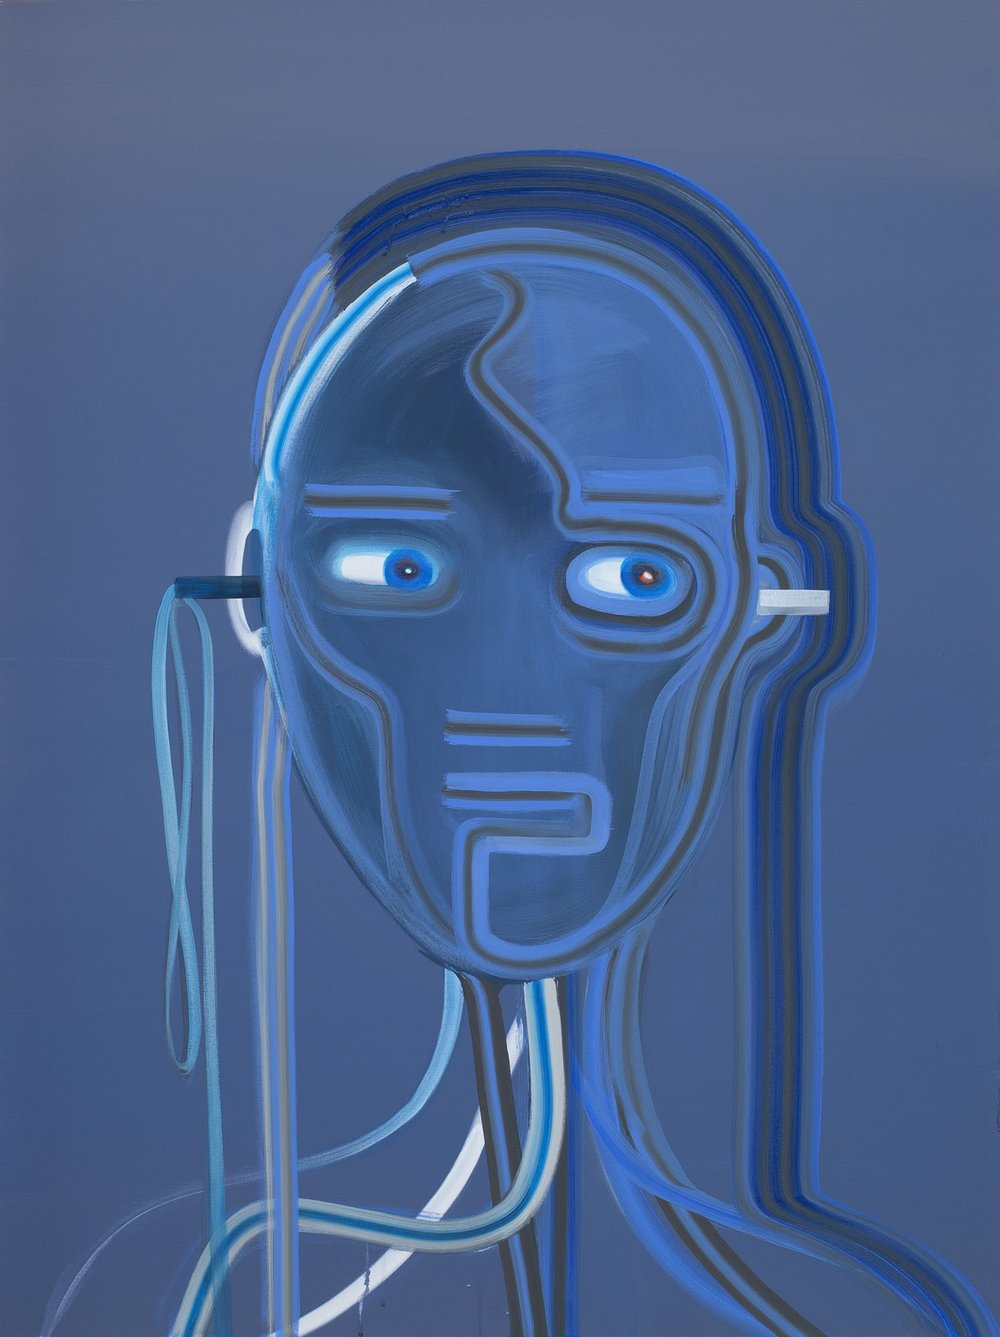 Heartbeat Bot - Blue, Wanda Koop